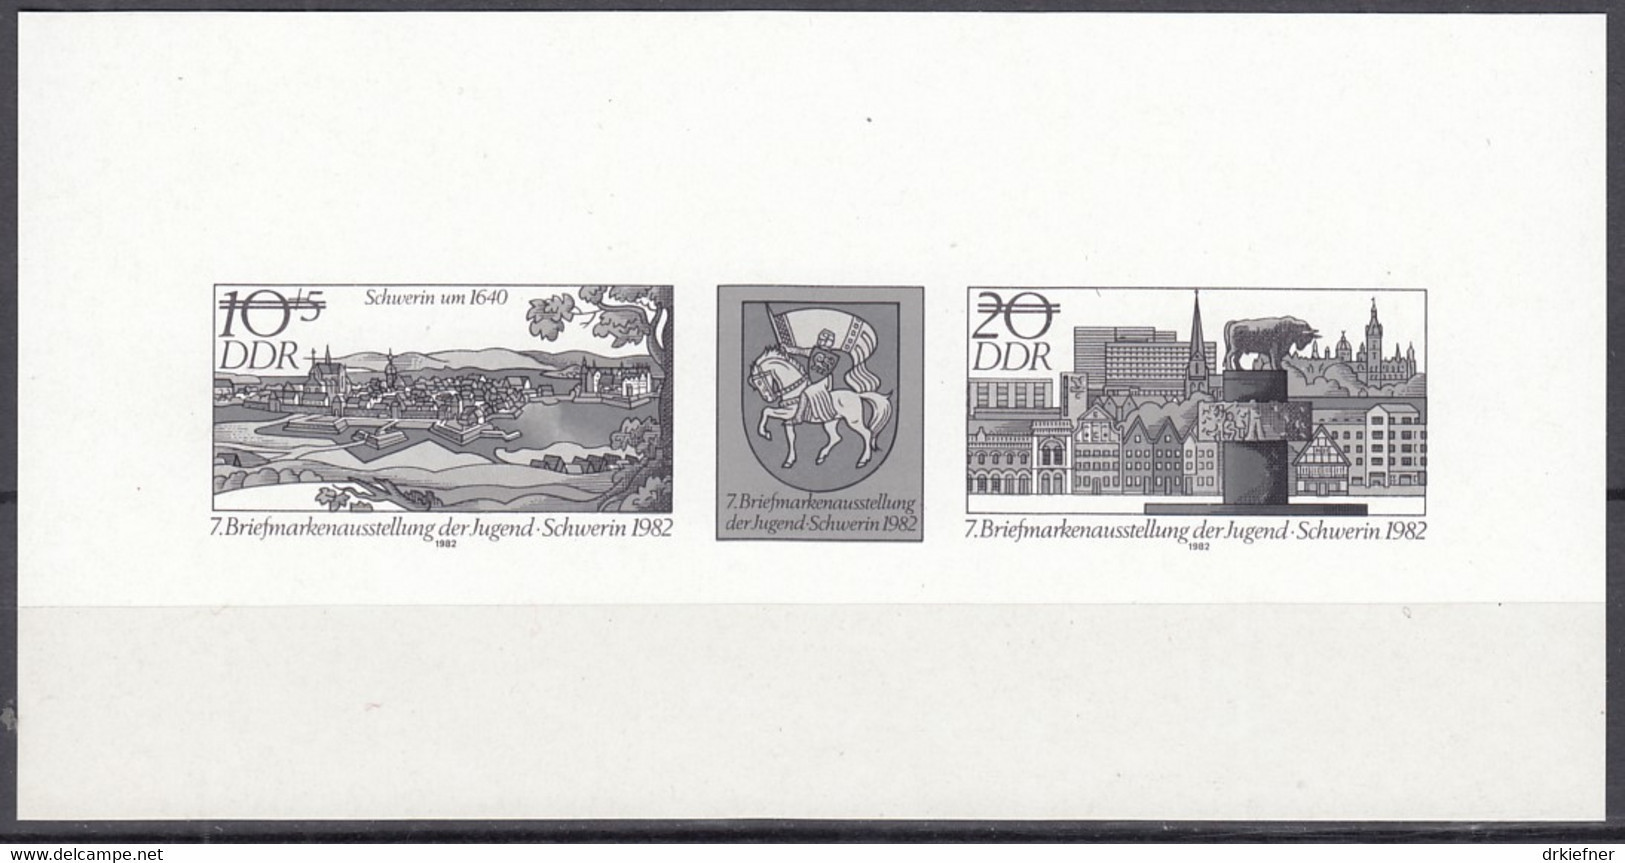 DDR W Zd 748 S, Schwarzdruck, Briefmarkenausstellung Der Jugend, Erfurt 1988 - Se-Tenant